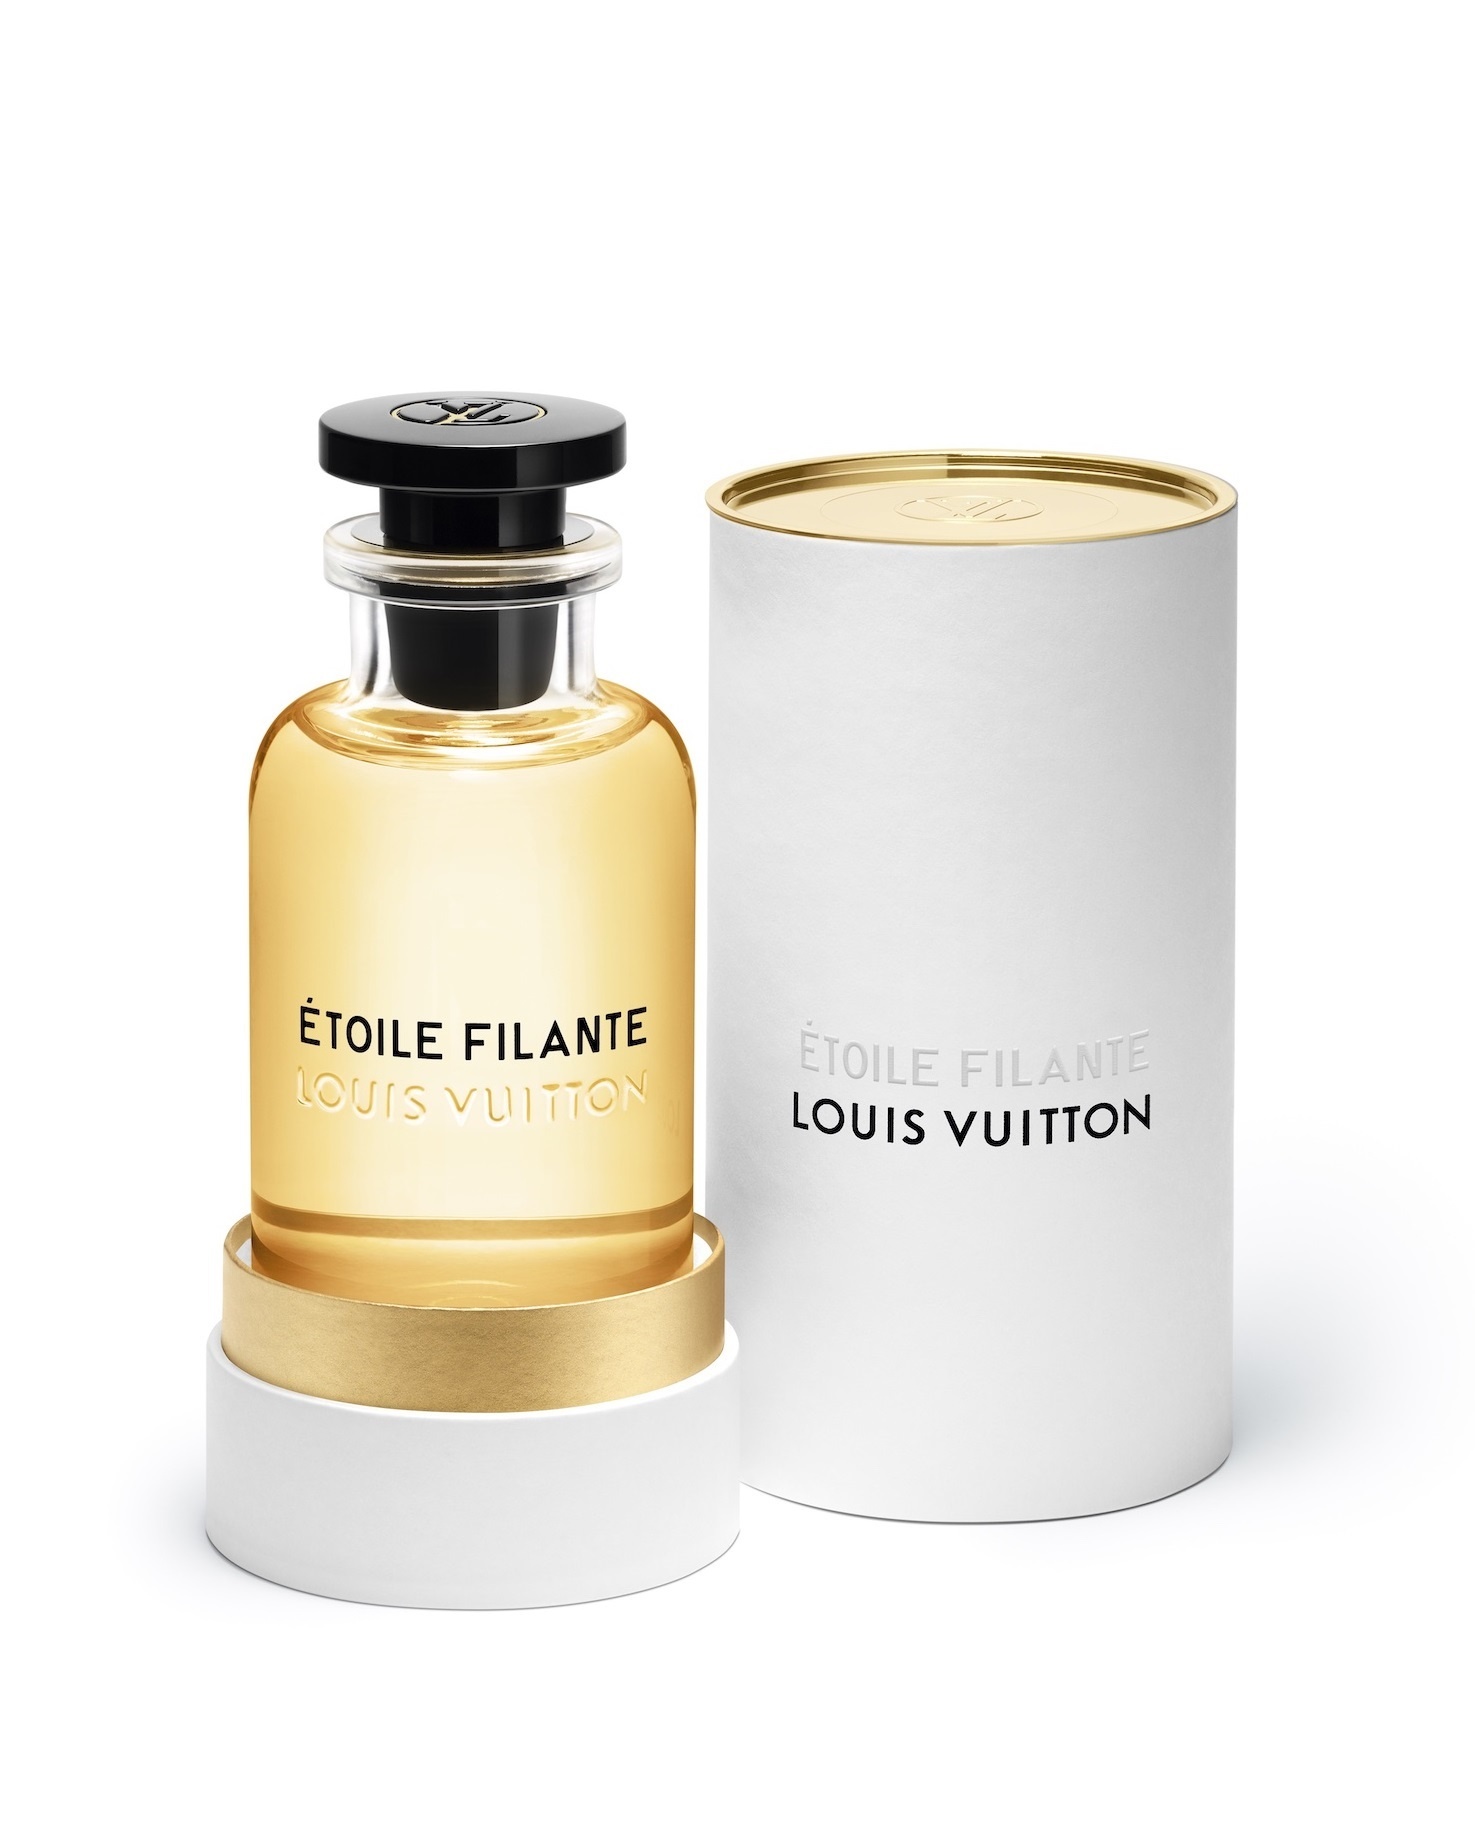 路易威登 星情 Louis Vuitton Étoile Filante|香水评论|香调|价格|味道|香评|评价|-香水时代NoseTime.com